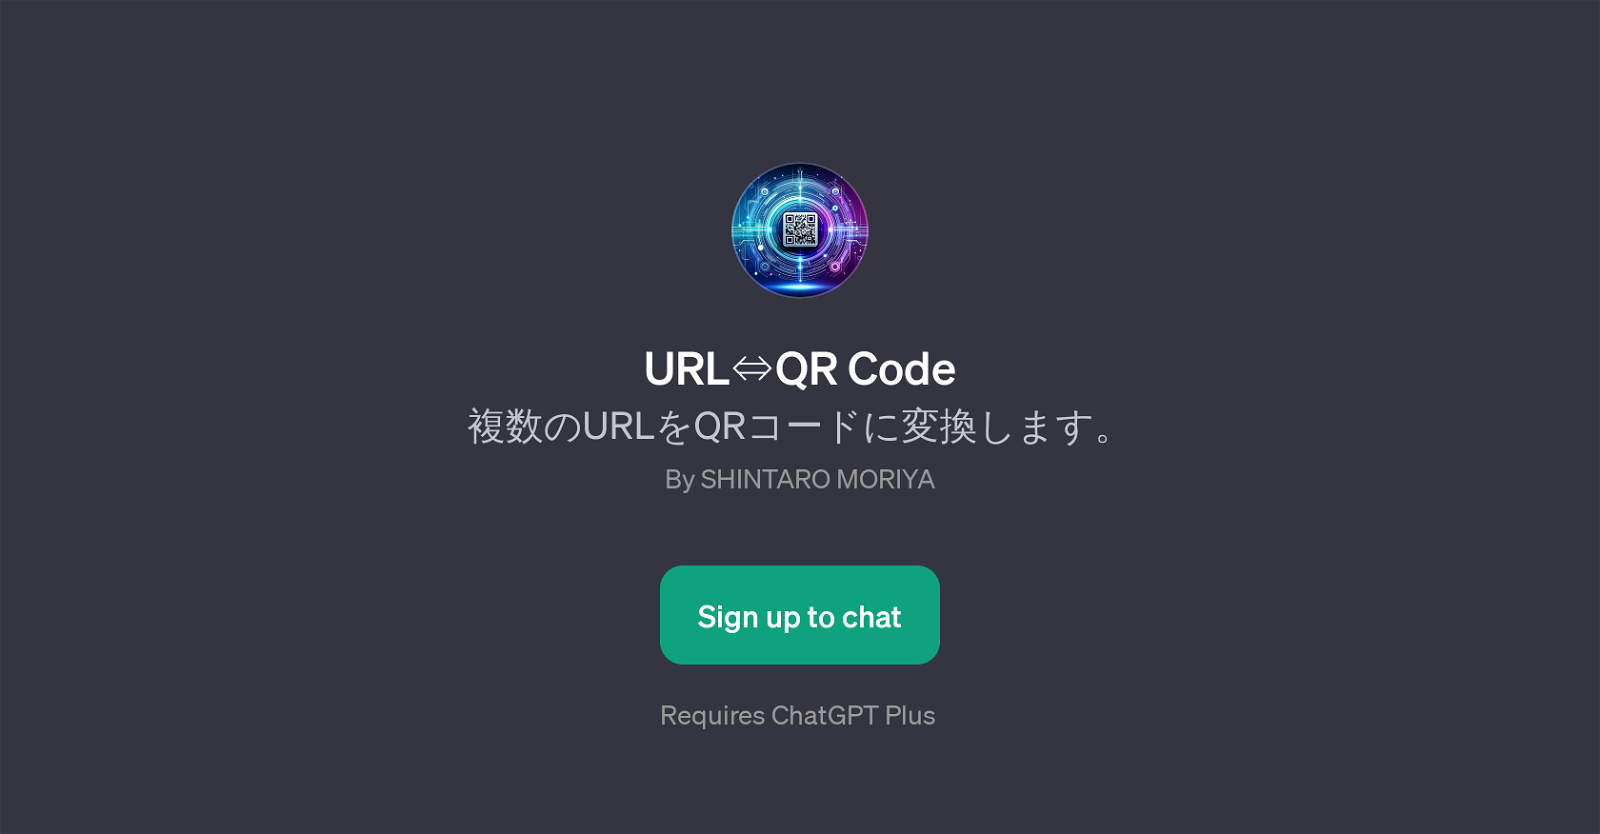 URLQR Code website